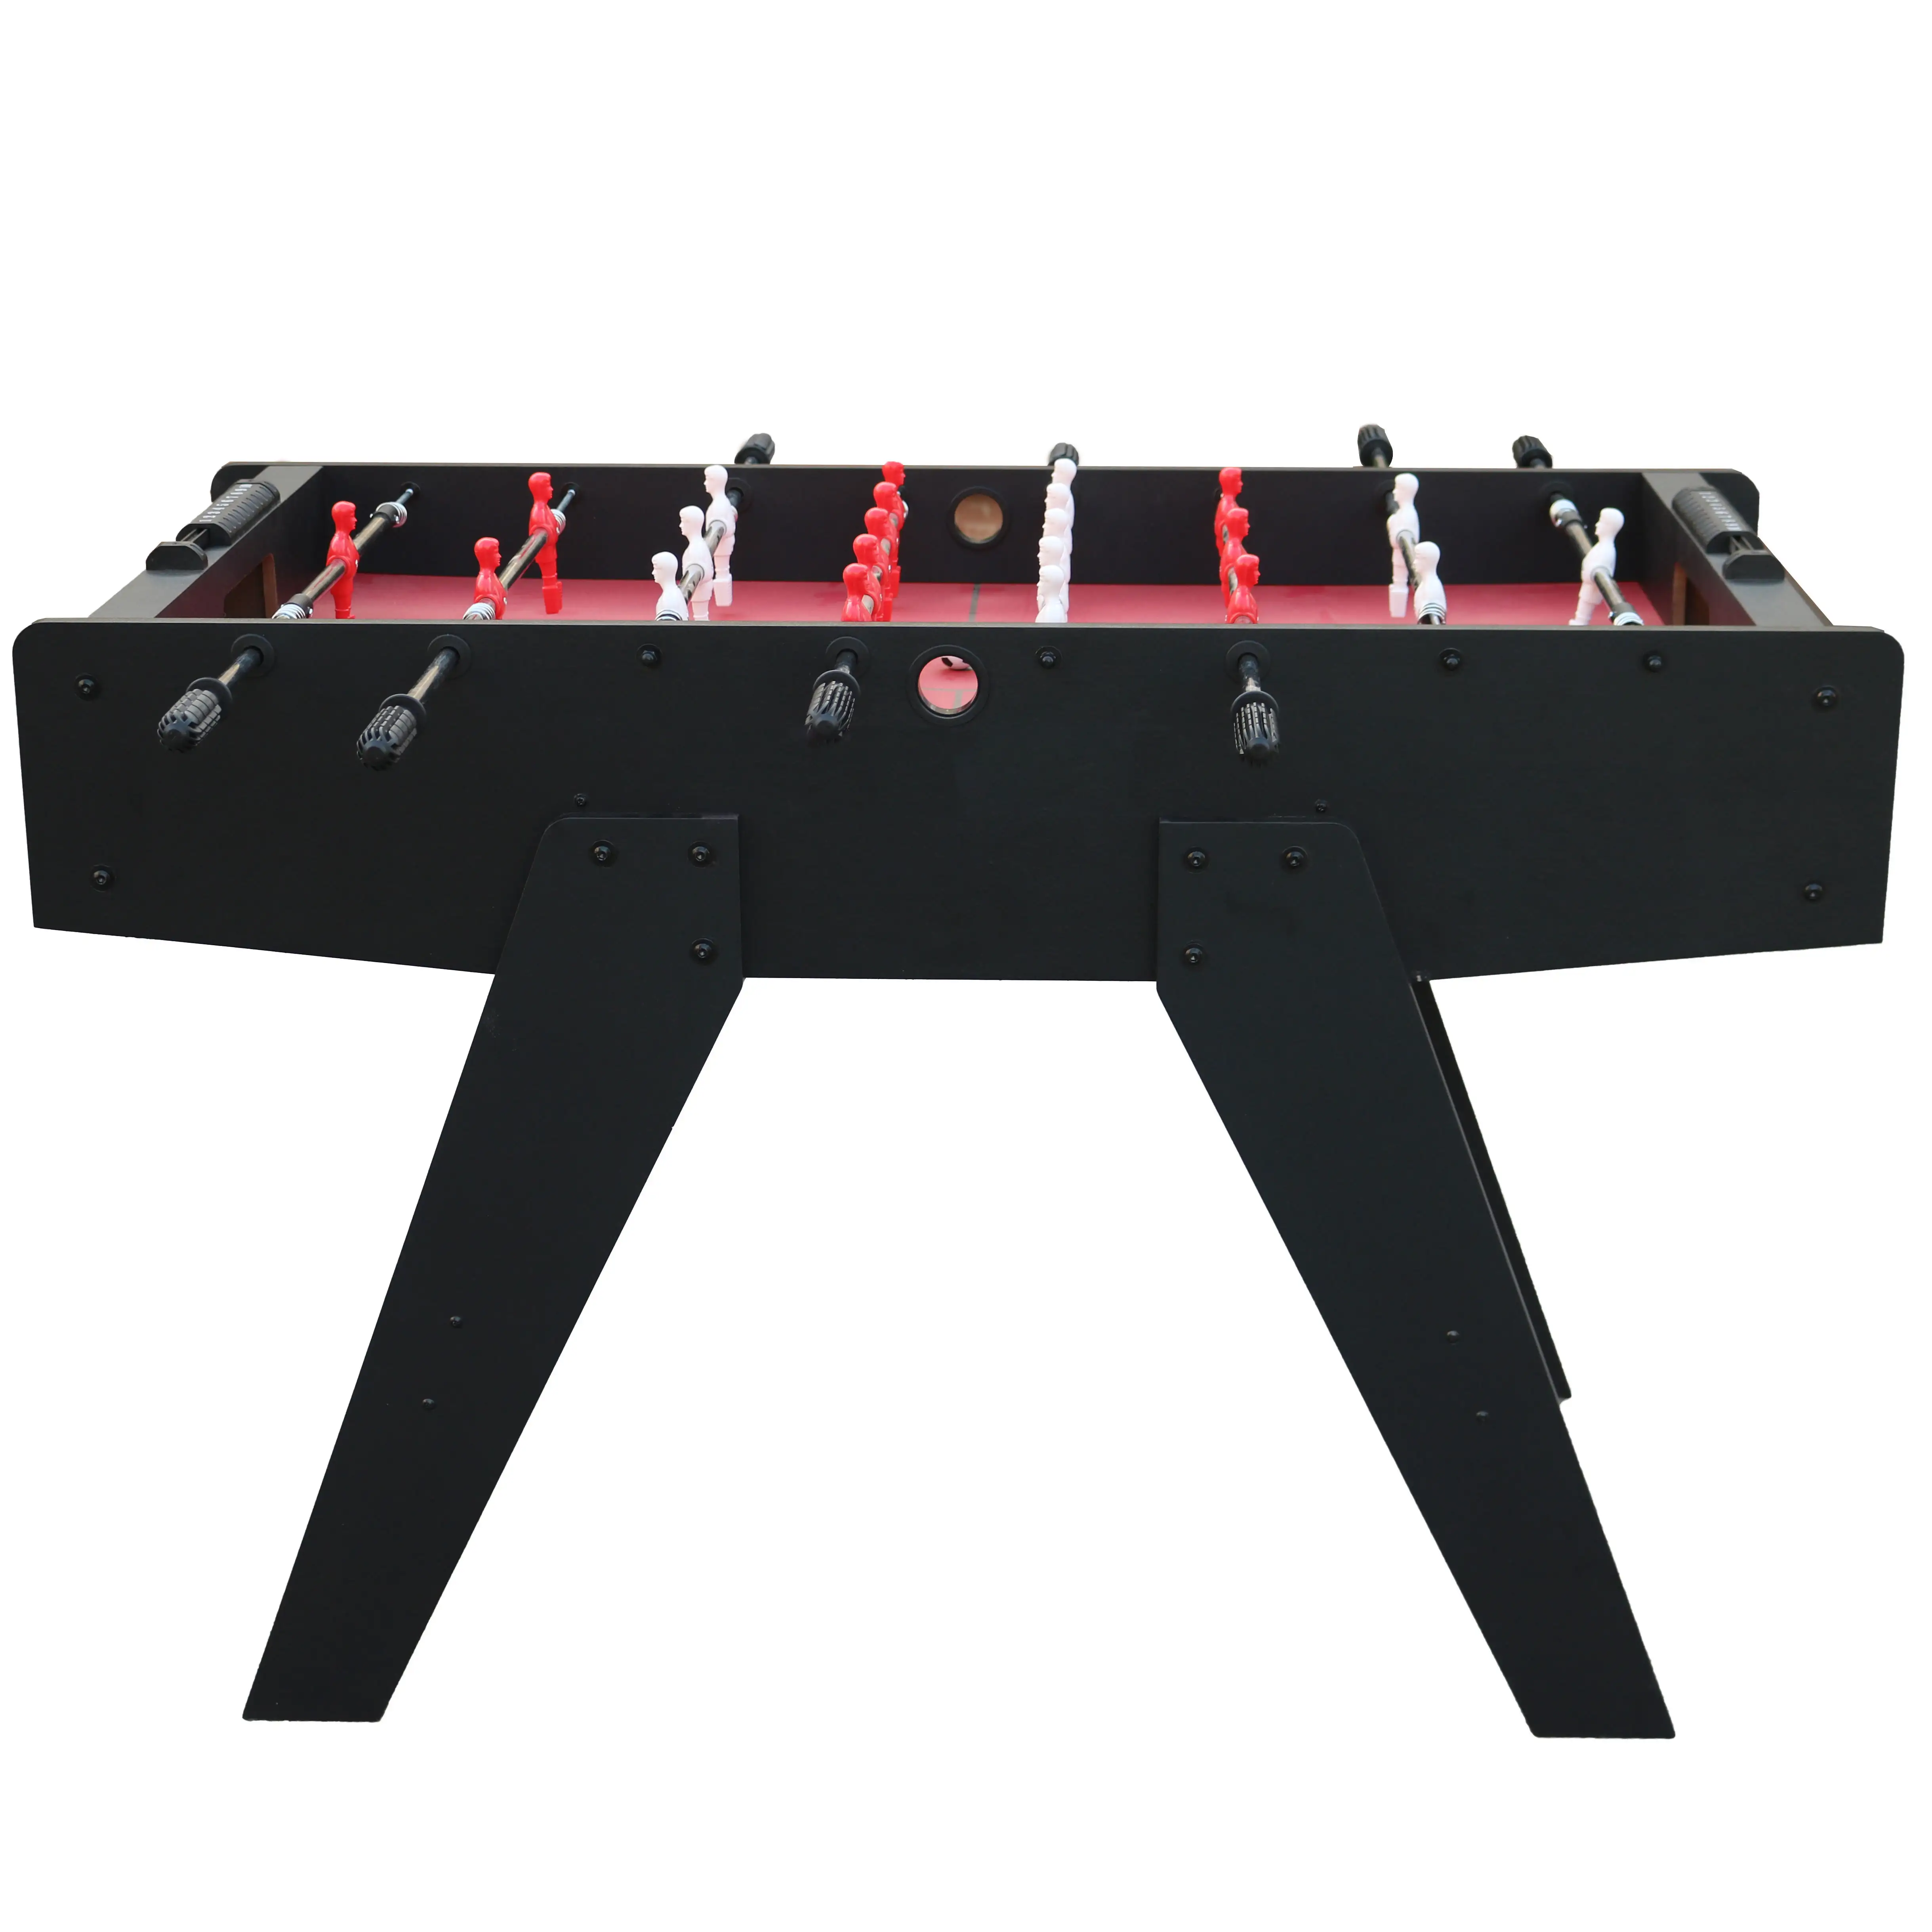 โต๊ะฟุตบอล4FT สำหรับใส่ได้ทั้งชายและหญิง2022ถ้วยสำหรับเล่นฟุตบอลโต๊ะนักรบพลาสติก B 25กก. สีดำ